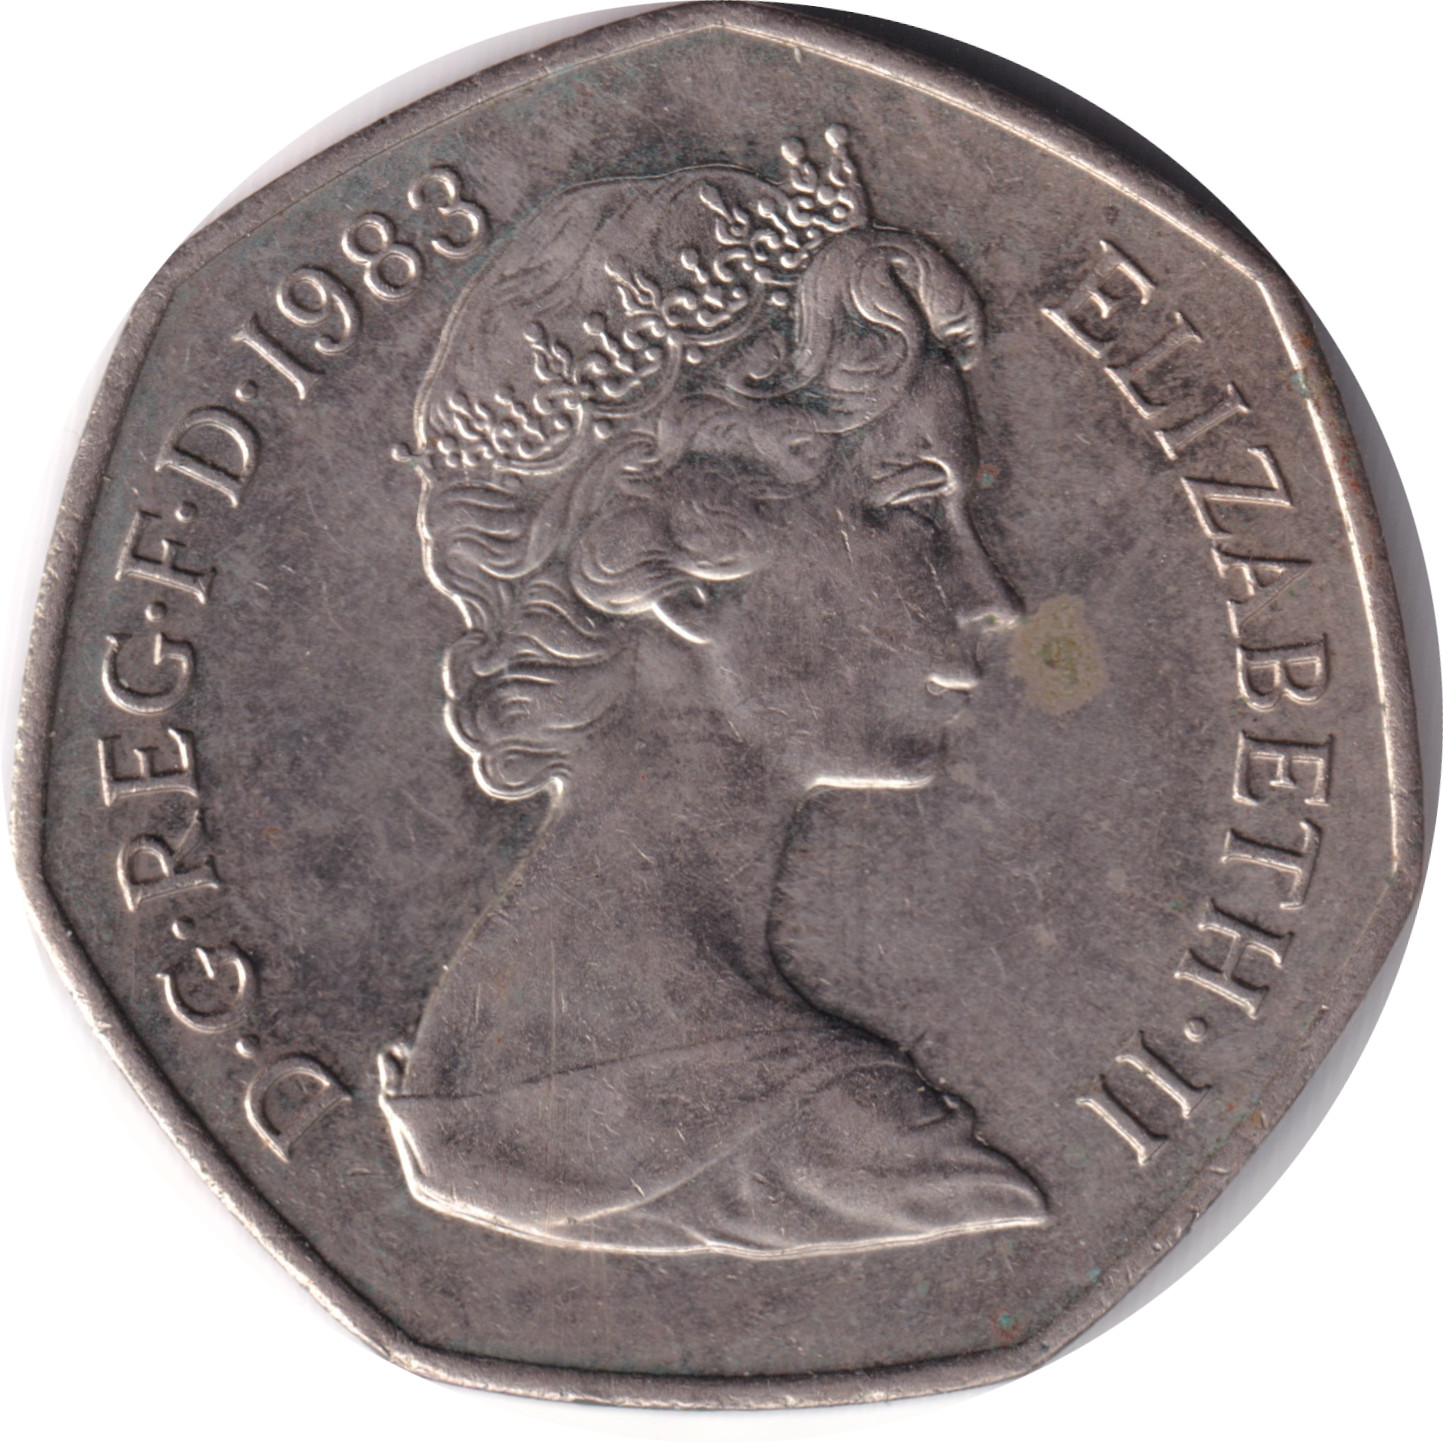 50 pence - Elizabeth II - Young bust